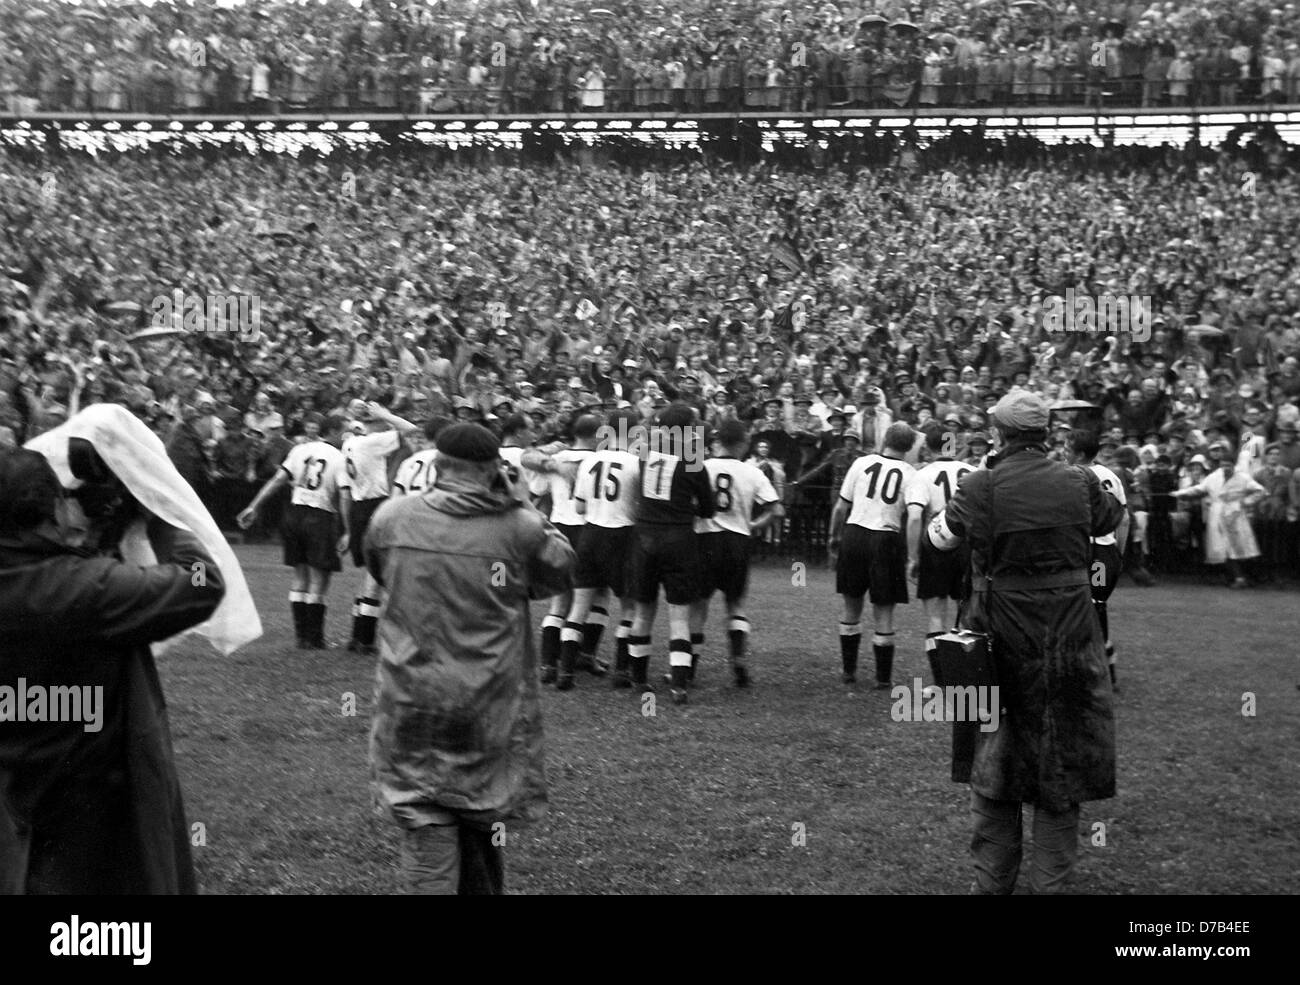 Il tedesco della nazionale di calcio vince la partita finale del campionato del mondo il 4 Luglio nel 1954 a Berna contro l'Ungheria con 3:2 davanti a 60.000 spettatori. La foto mostra i giocatori il tifo dopo il fischio finale (l-r) Max Morlock (13), Horst Eckel (6), Hans Schäfer (20), Jupp Posipal (7), Ottmar Walter (15), Toni Turek (1), Karl ami (8), Werner Liebrich (10) e Fritz Walter (16). Foto Stock